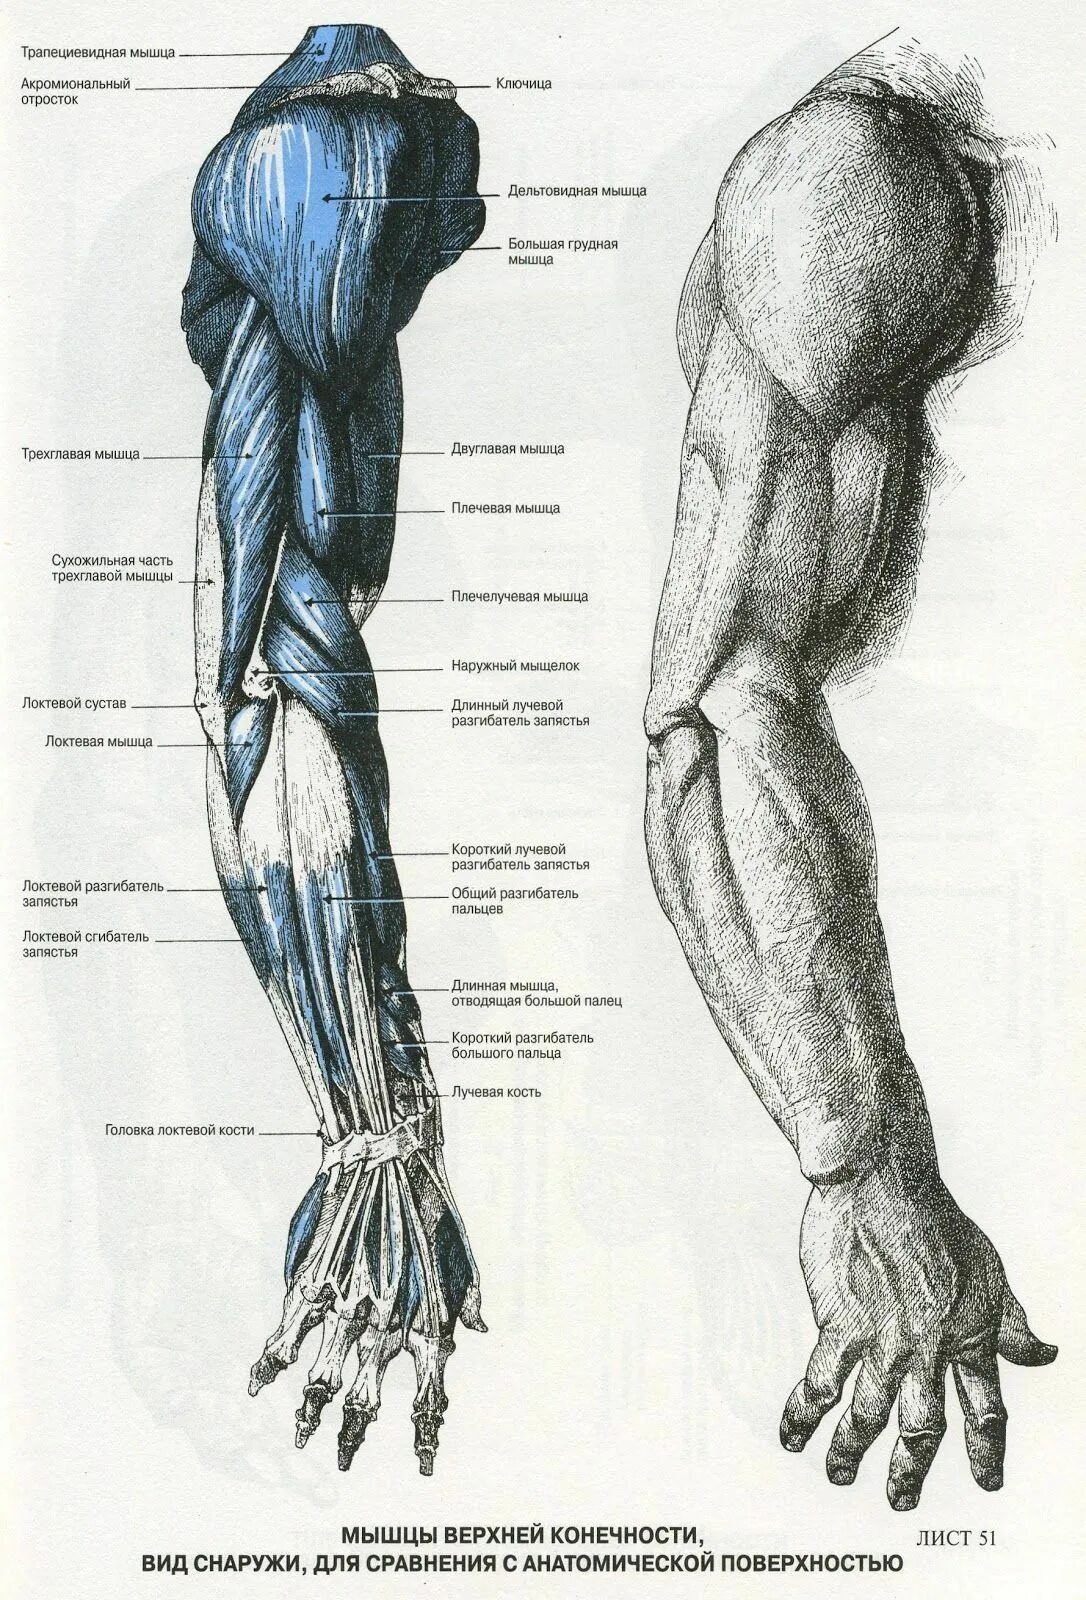 Мышцы предплечья пластическая анатомия. Мышцы руки анатомия человека. Анатомический атлас человека мышцы рук. Анатомия человека мышцы для художников рука.